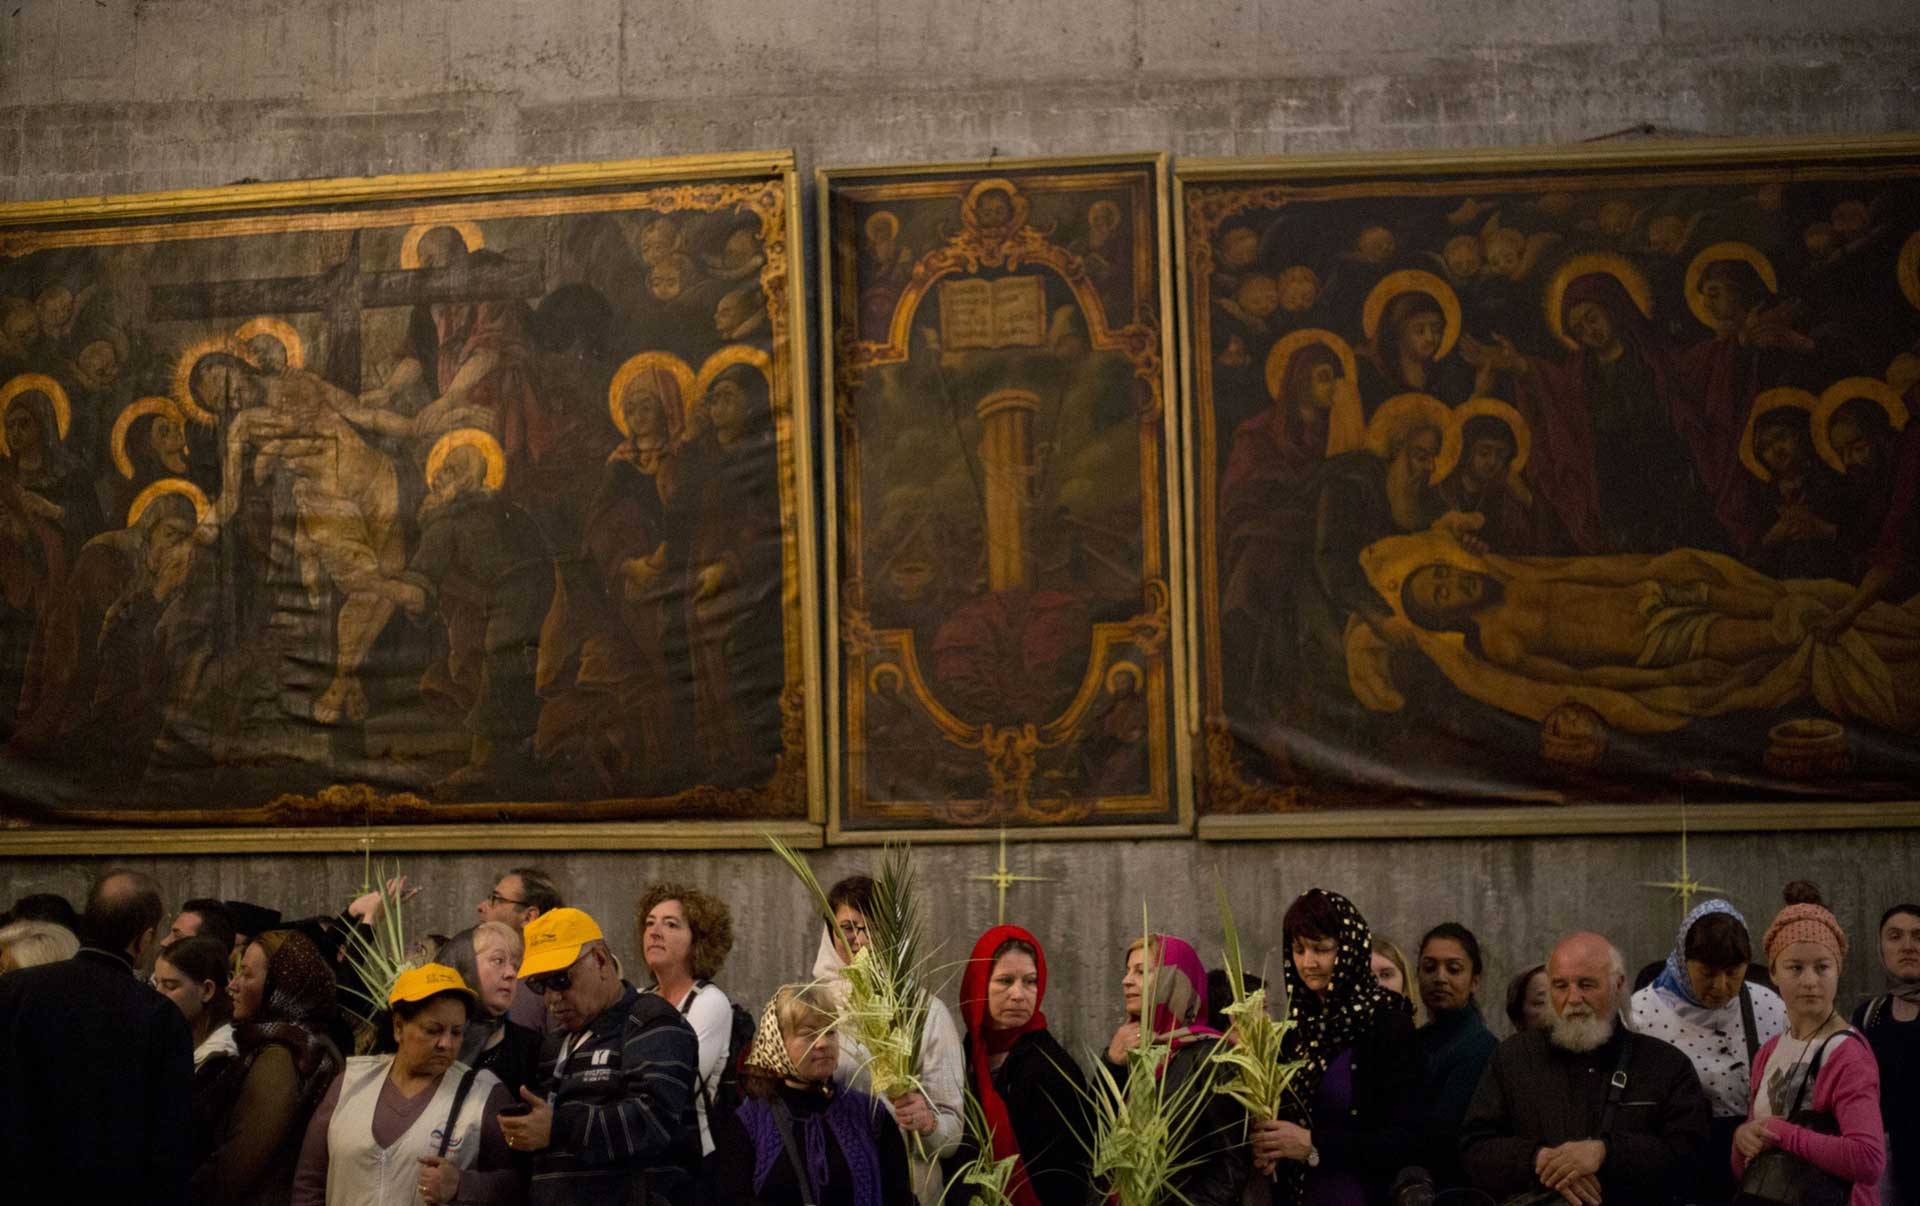 عکسی از تجمع مسیحیان ارتودوکس